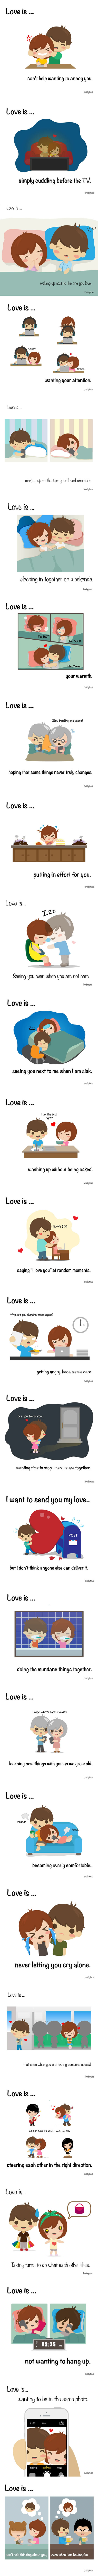 Love is in the little things (via LoveByte)